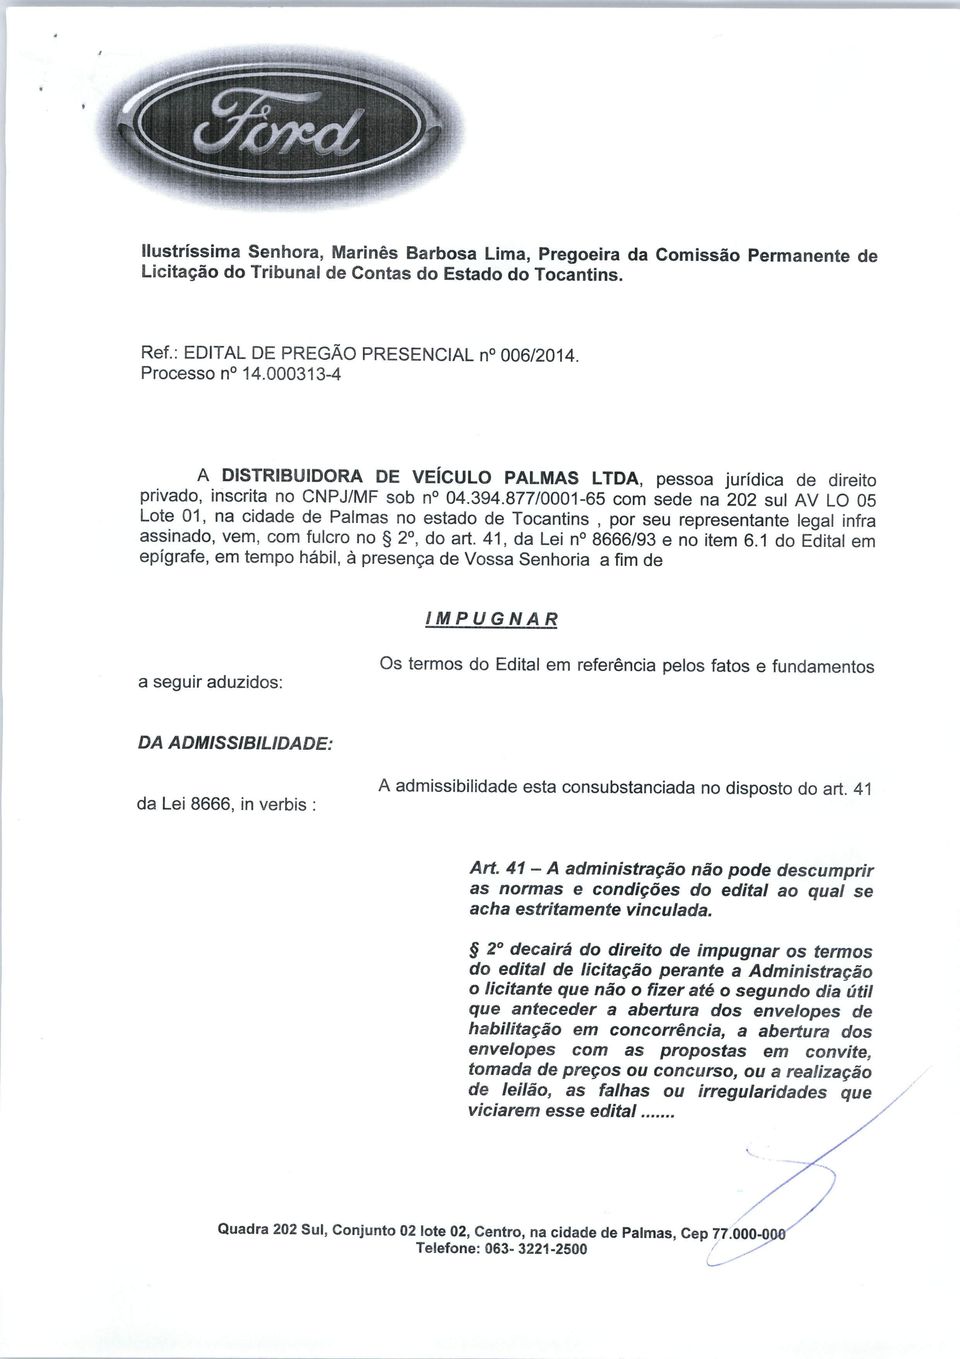 877/0001-65 com sede na 202 sul AV L 05 Lote 01, na cidade de Palmas no estado de Tocantins, por seu representante legal infra assinado, vem, com fulcro no 2o, do art.